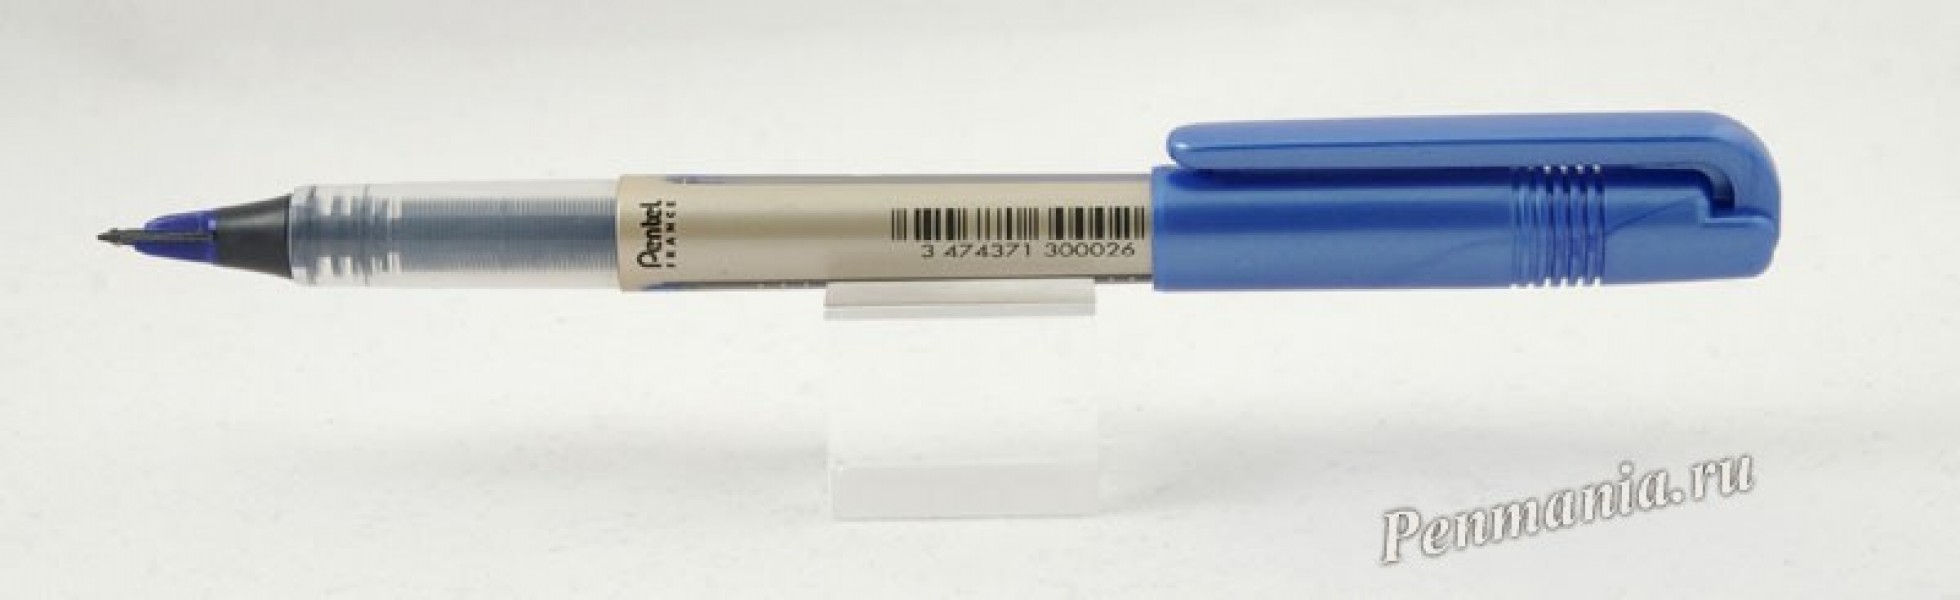 перьевая ручка Pentel JL30 / fountain pen